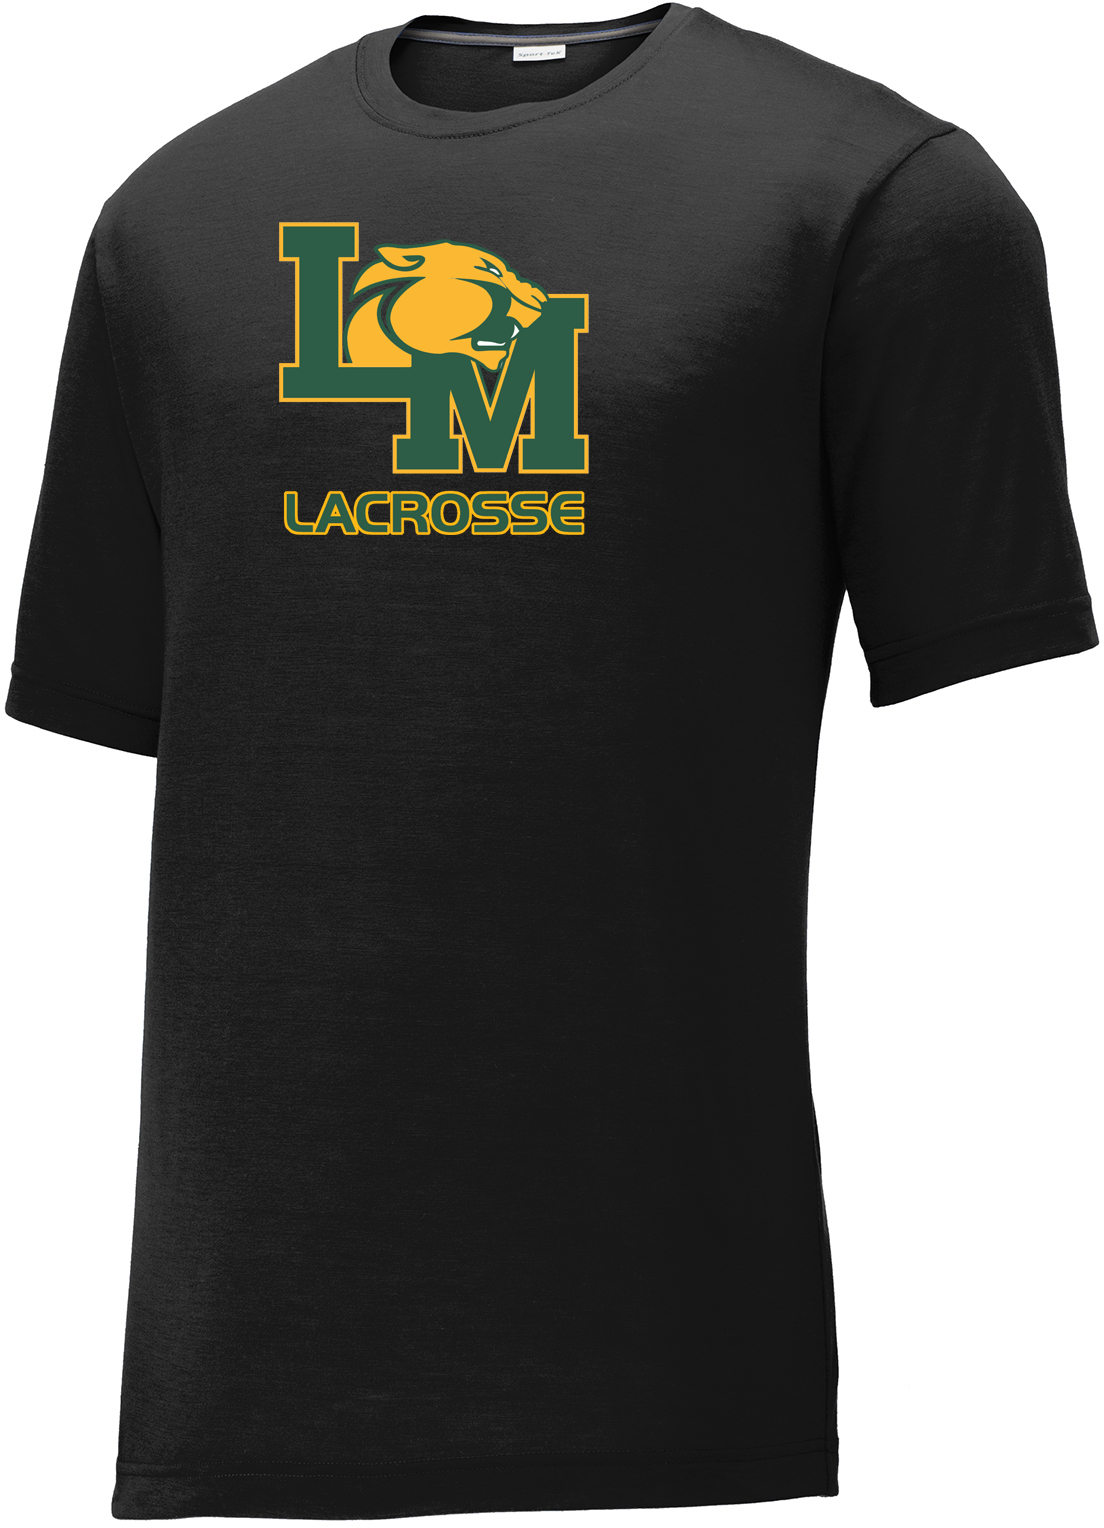 Little Miami Lacrosse Black CottonTouch Performance T-Shirt